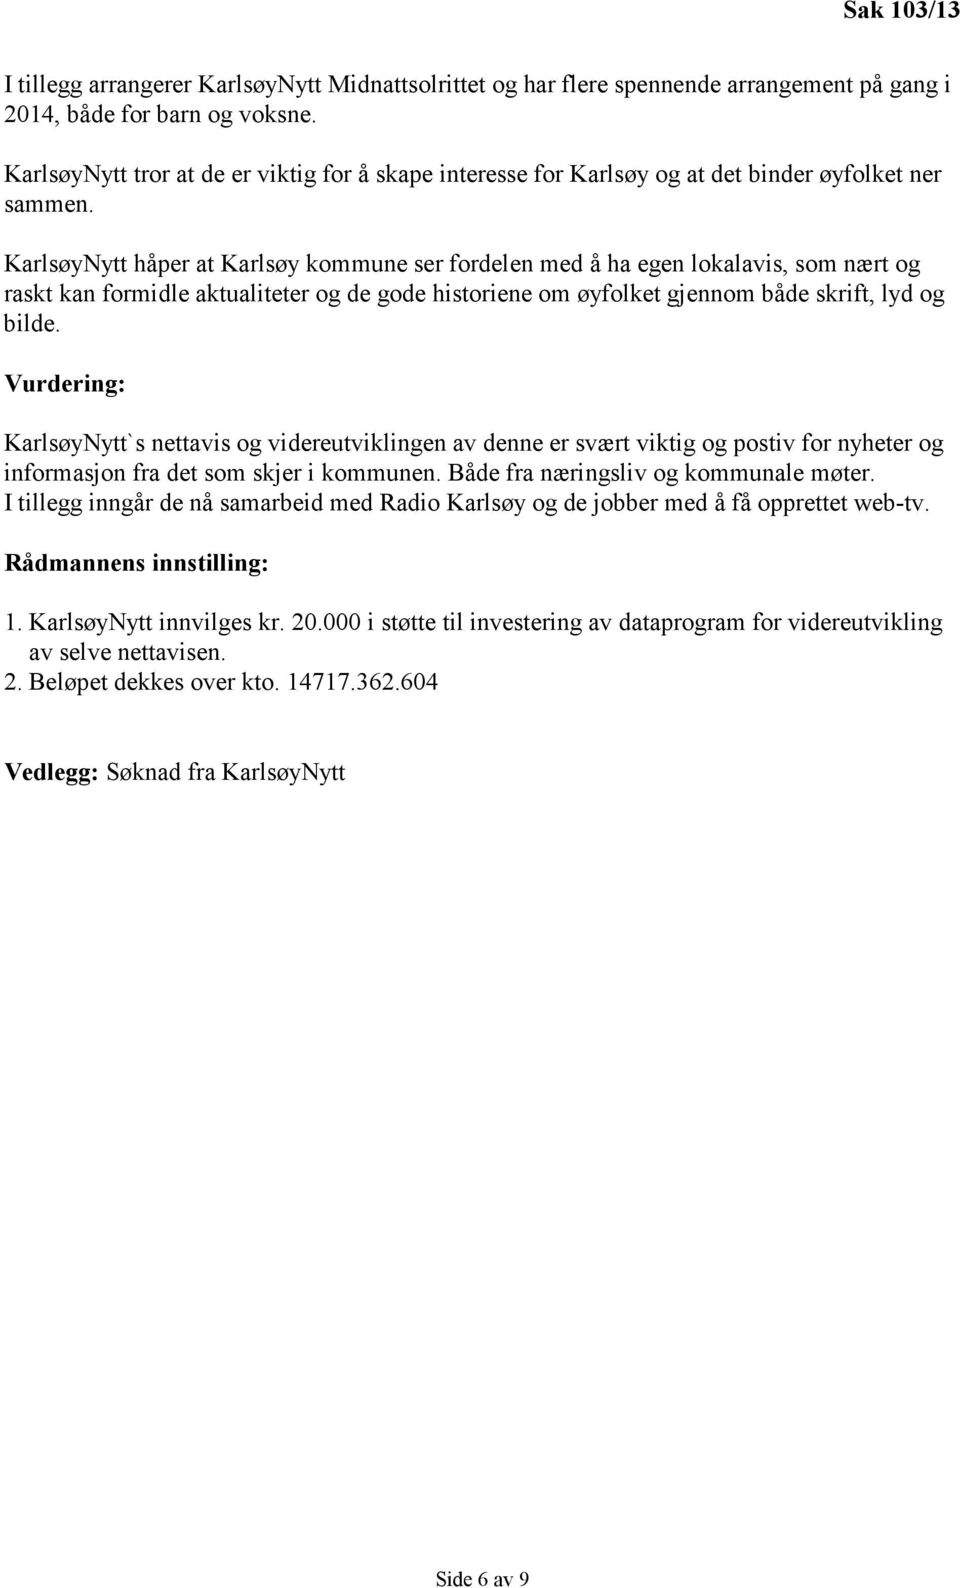 KarlsøyNytt håper at Karlsøy kommune ser fordelen med å ha egen lokalavis, som nært og raskt kan formidle aktualiteter og de gode historiene om øyfolket gjennom både skrift, lyd og bilde.